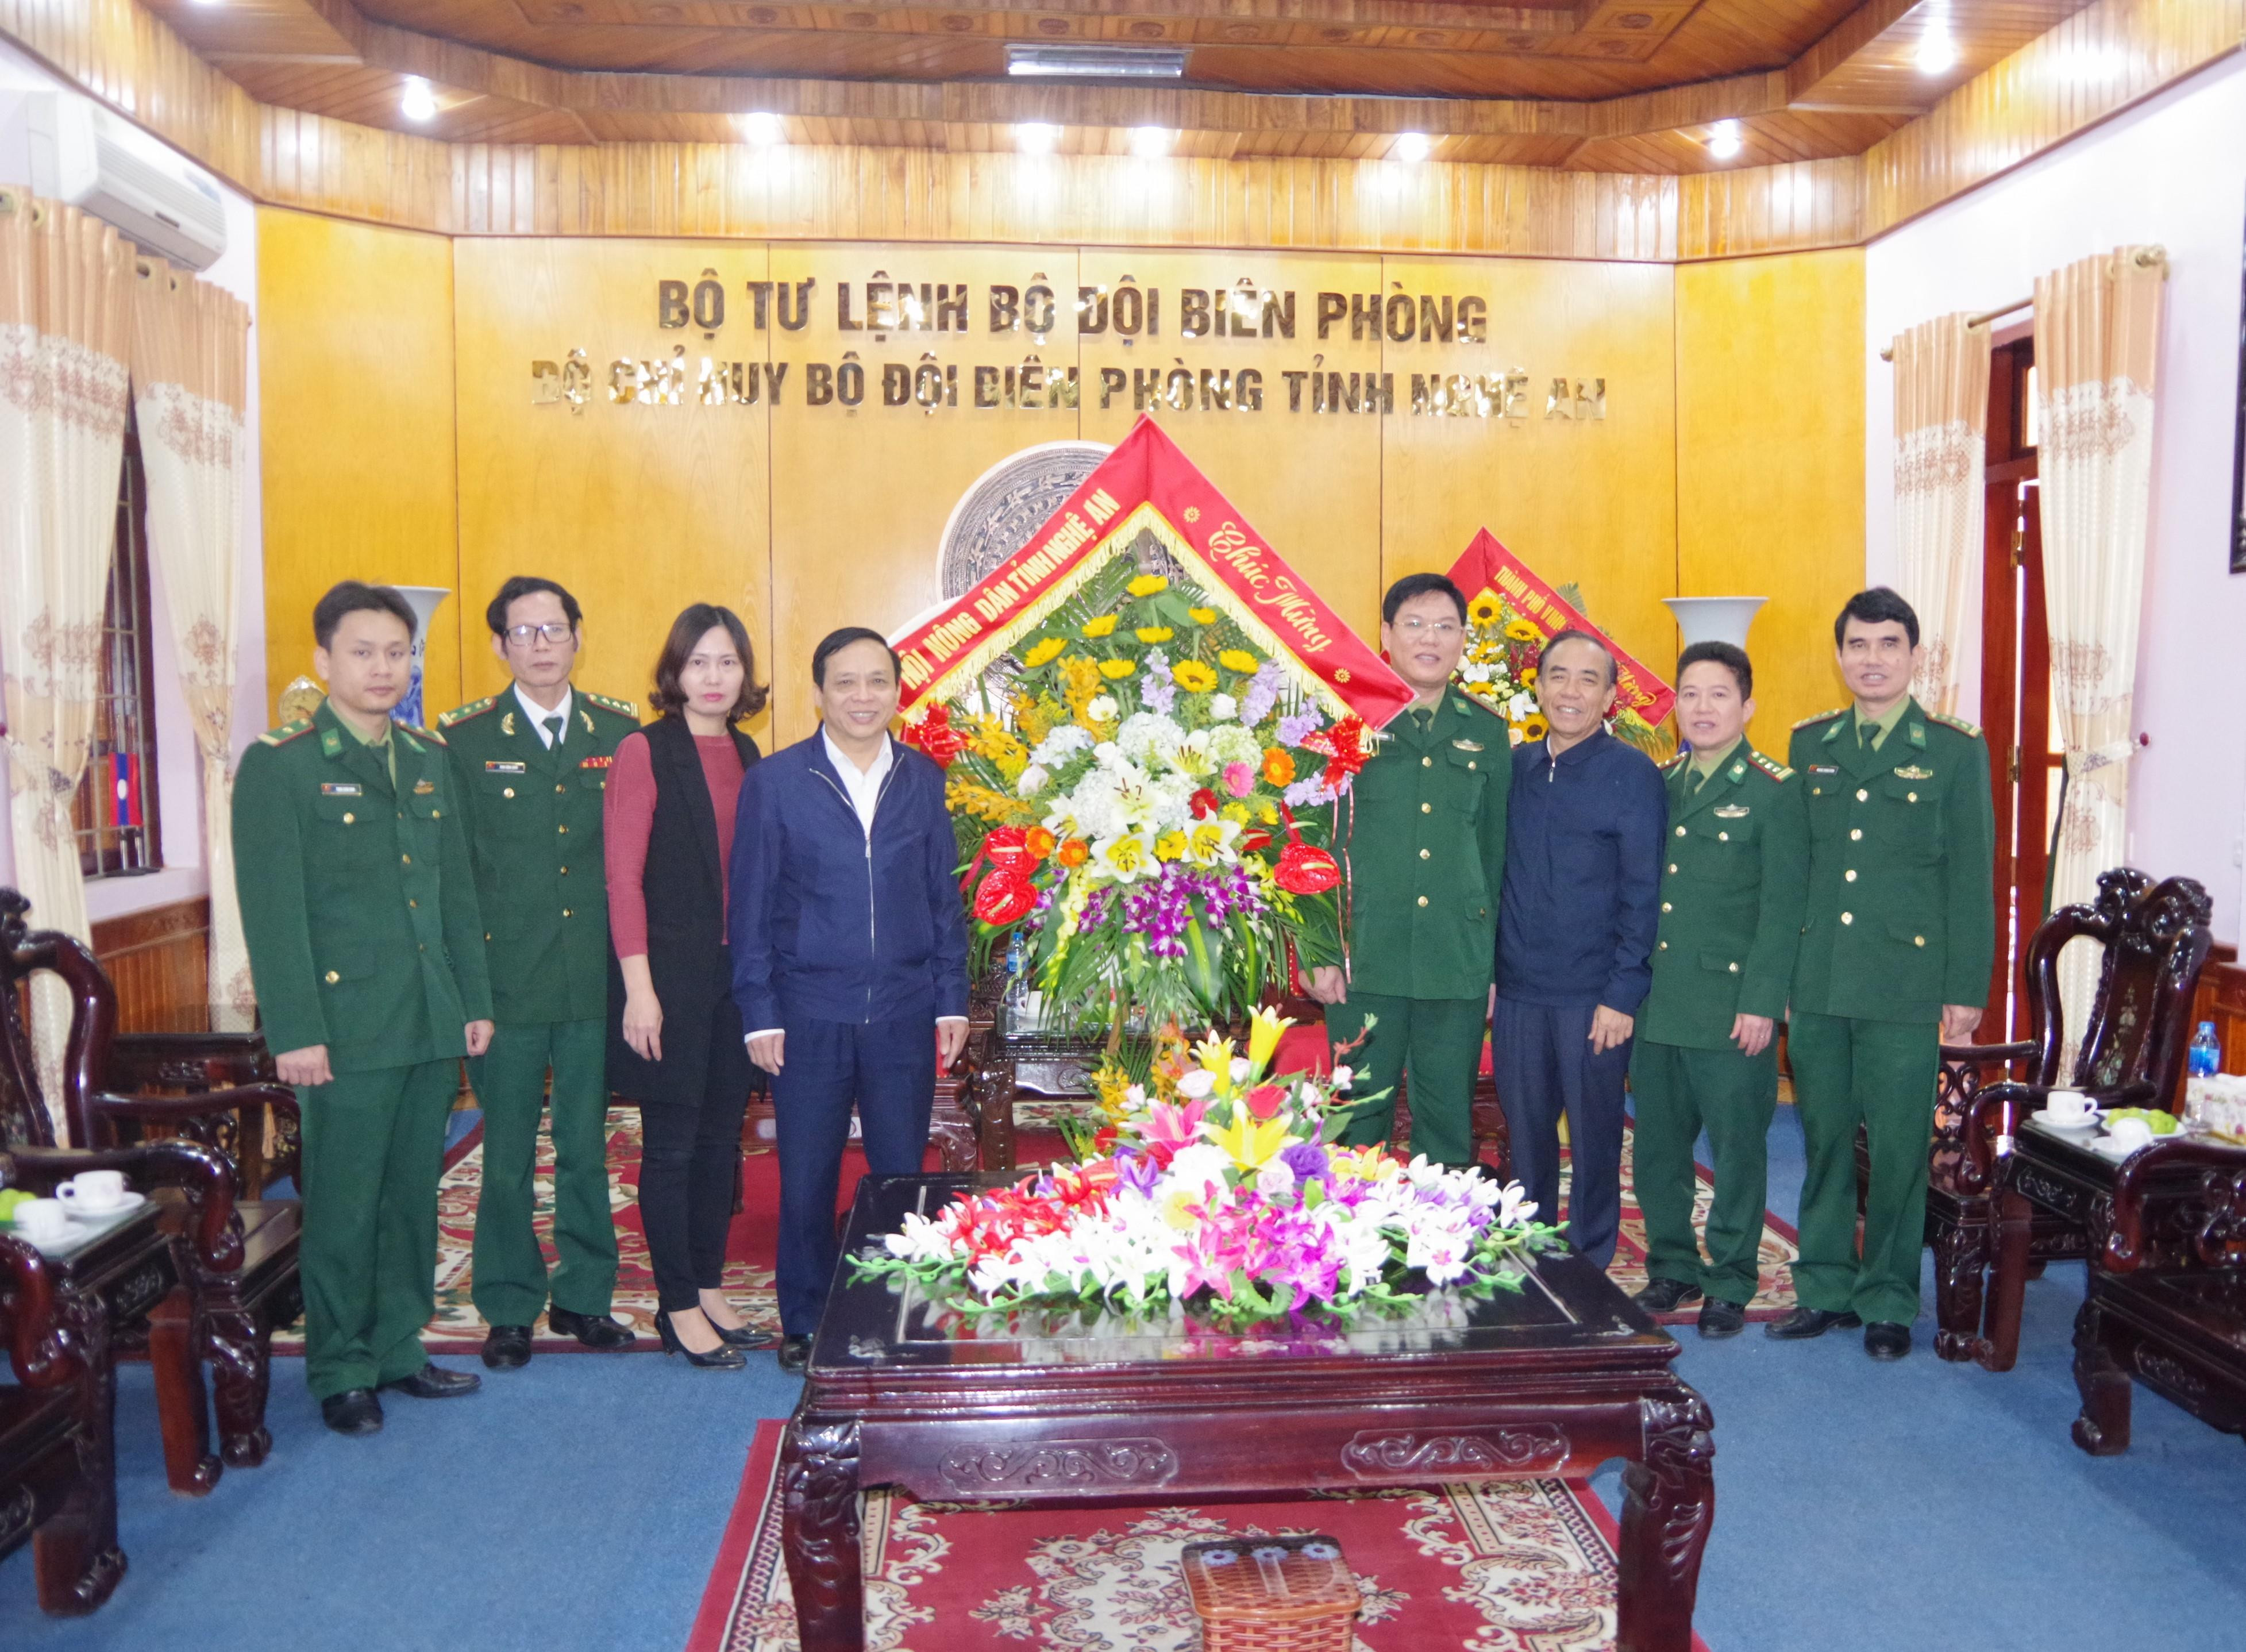 Đoàn đại biểu thành phố Vinhdo đồng chí Phan Đức Đồng, UVBTV Tỉnh ủy, Bí thư Thành ủy Vinh dẫn đầu đến chung vui với CBCS BĐBP Nghệ An nhân 60 năm ngày truyền thống BĐBP (3/3/1959 – 3/3/2019)